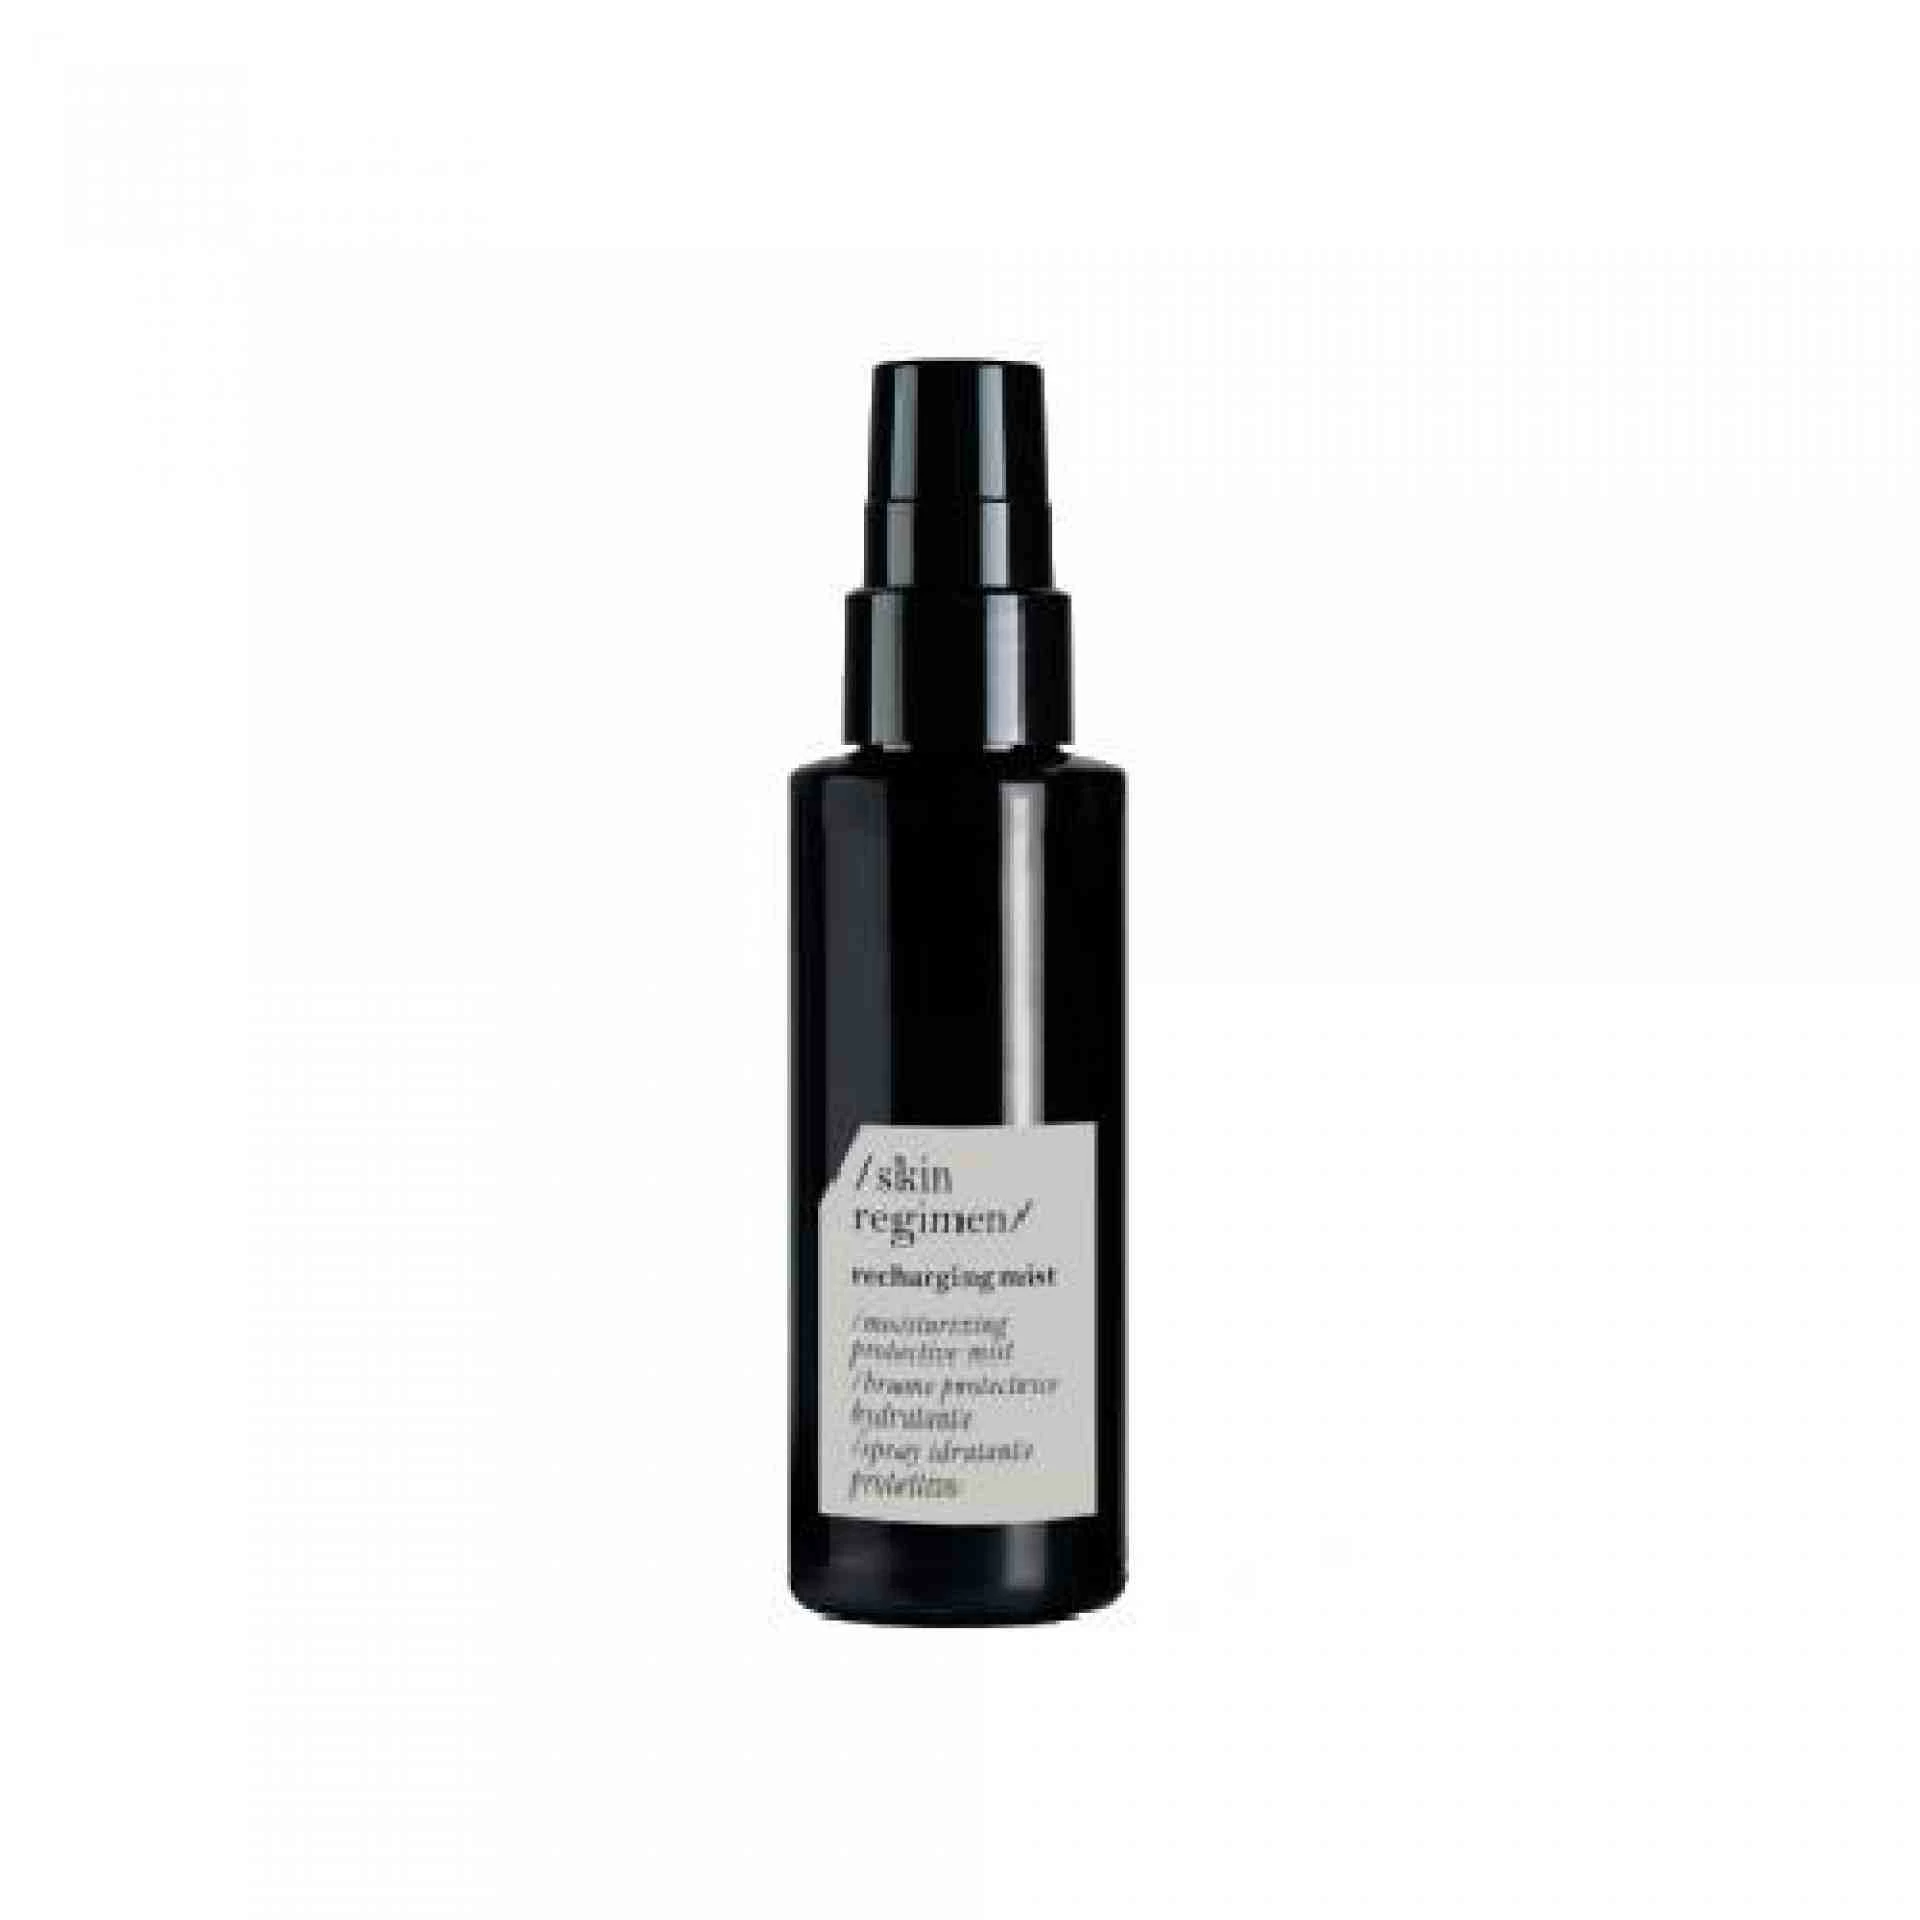 SKIN REGIMEN RECHARGING MIST | Spray facial protector 100ml - Skin Regimen - Comfort Zone ®